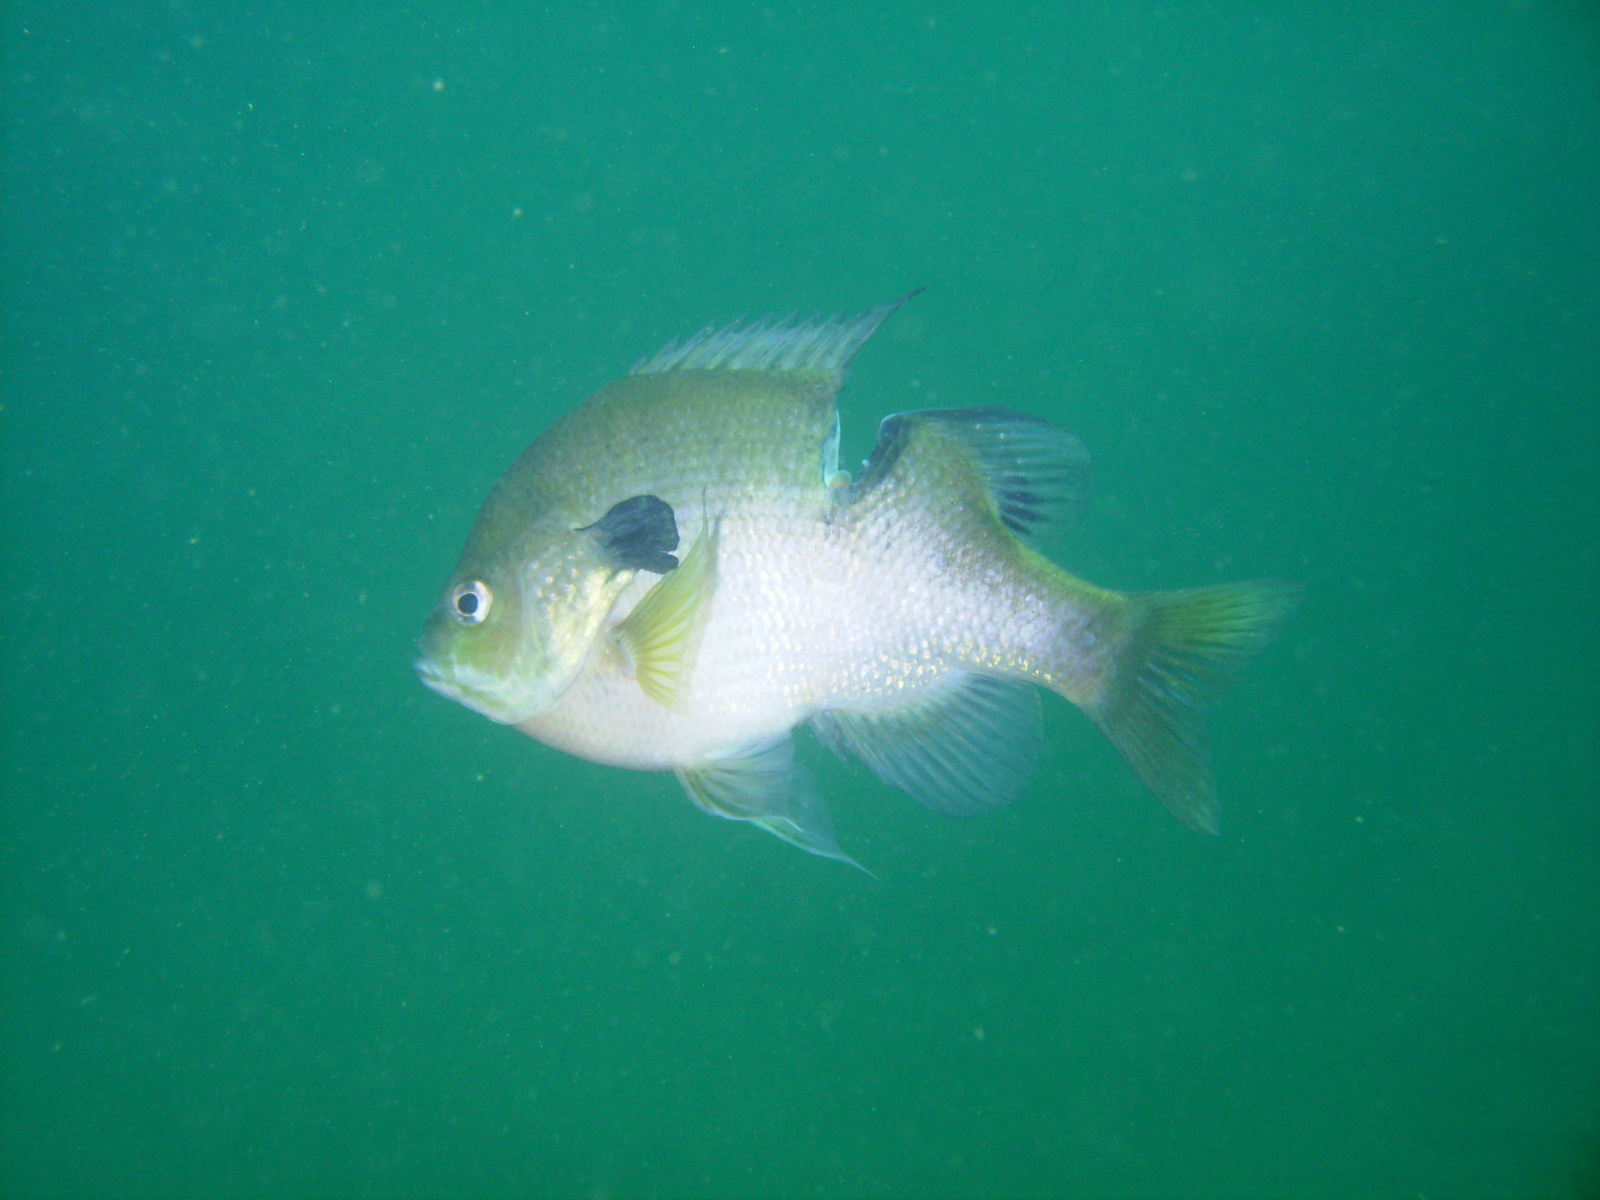 cutfish